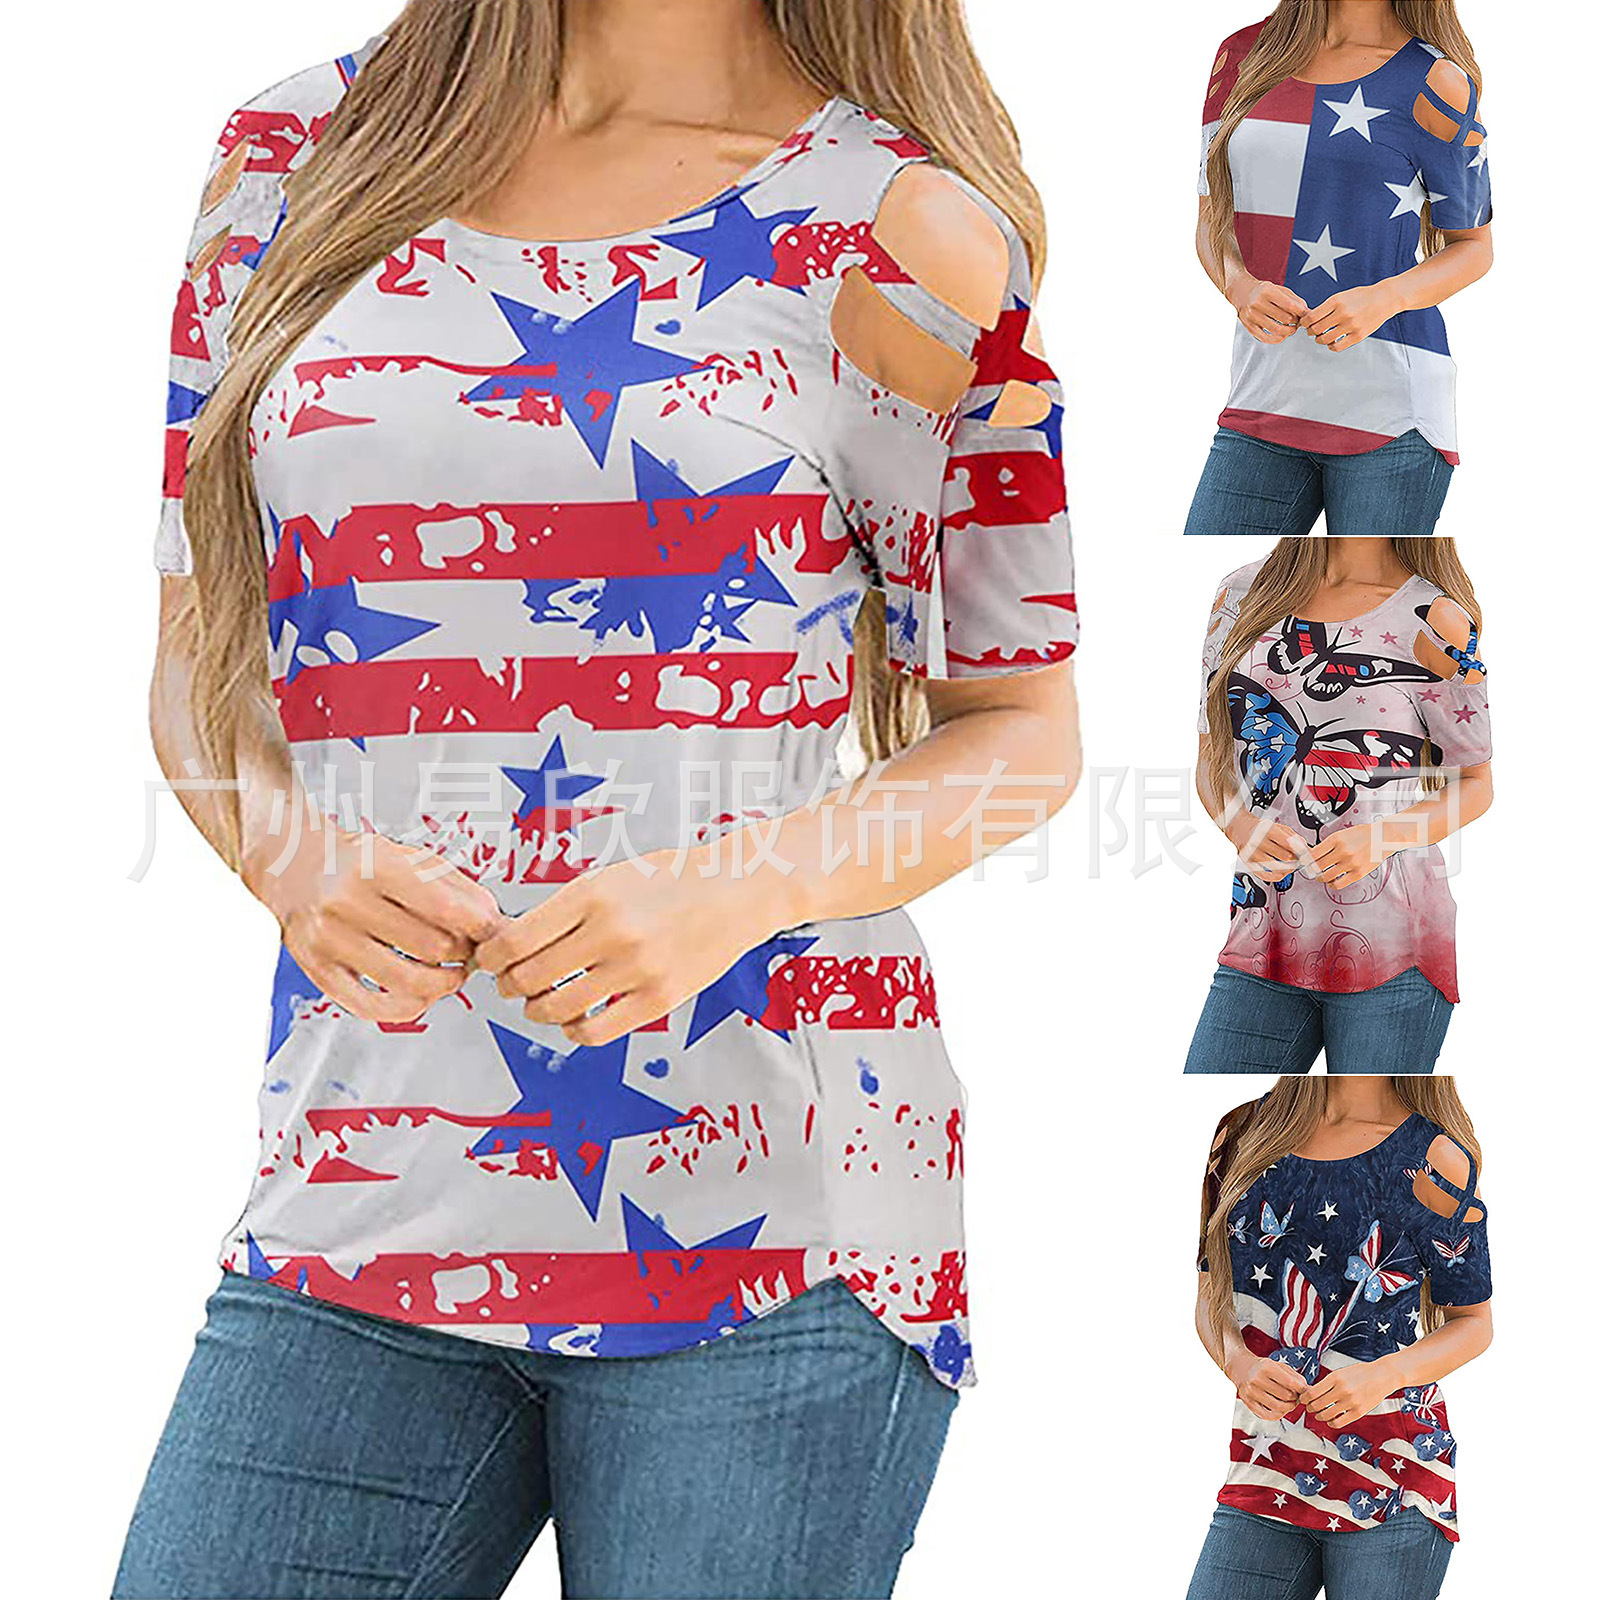 2021夏季新款女式美国国旗印花T恤 独立日节庆服装2